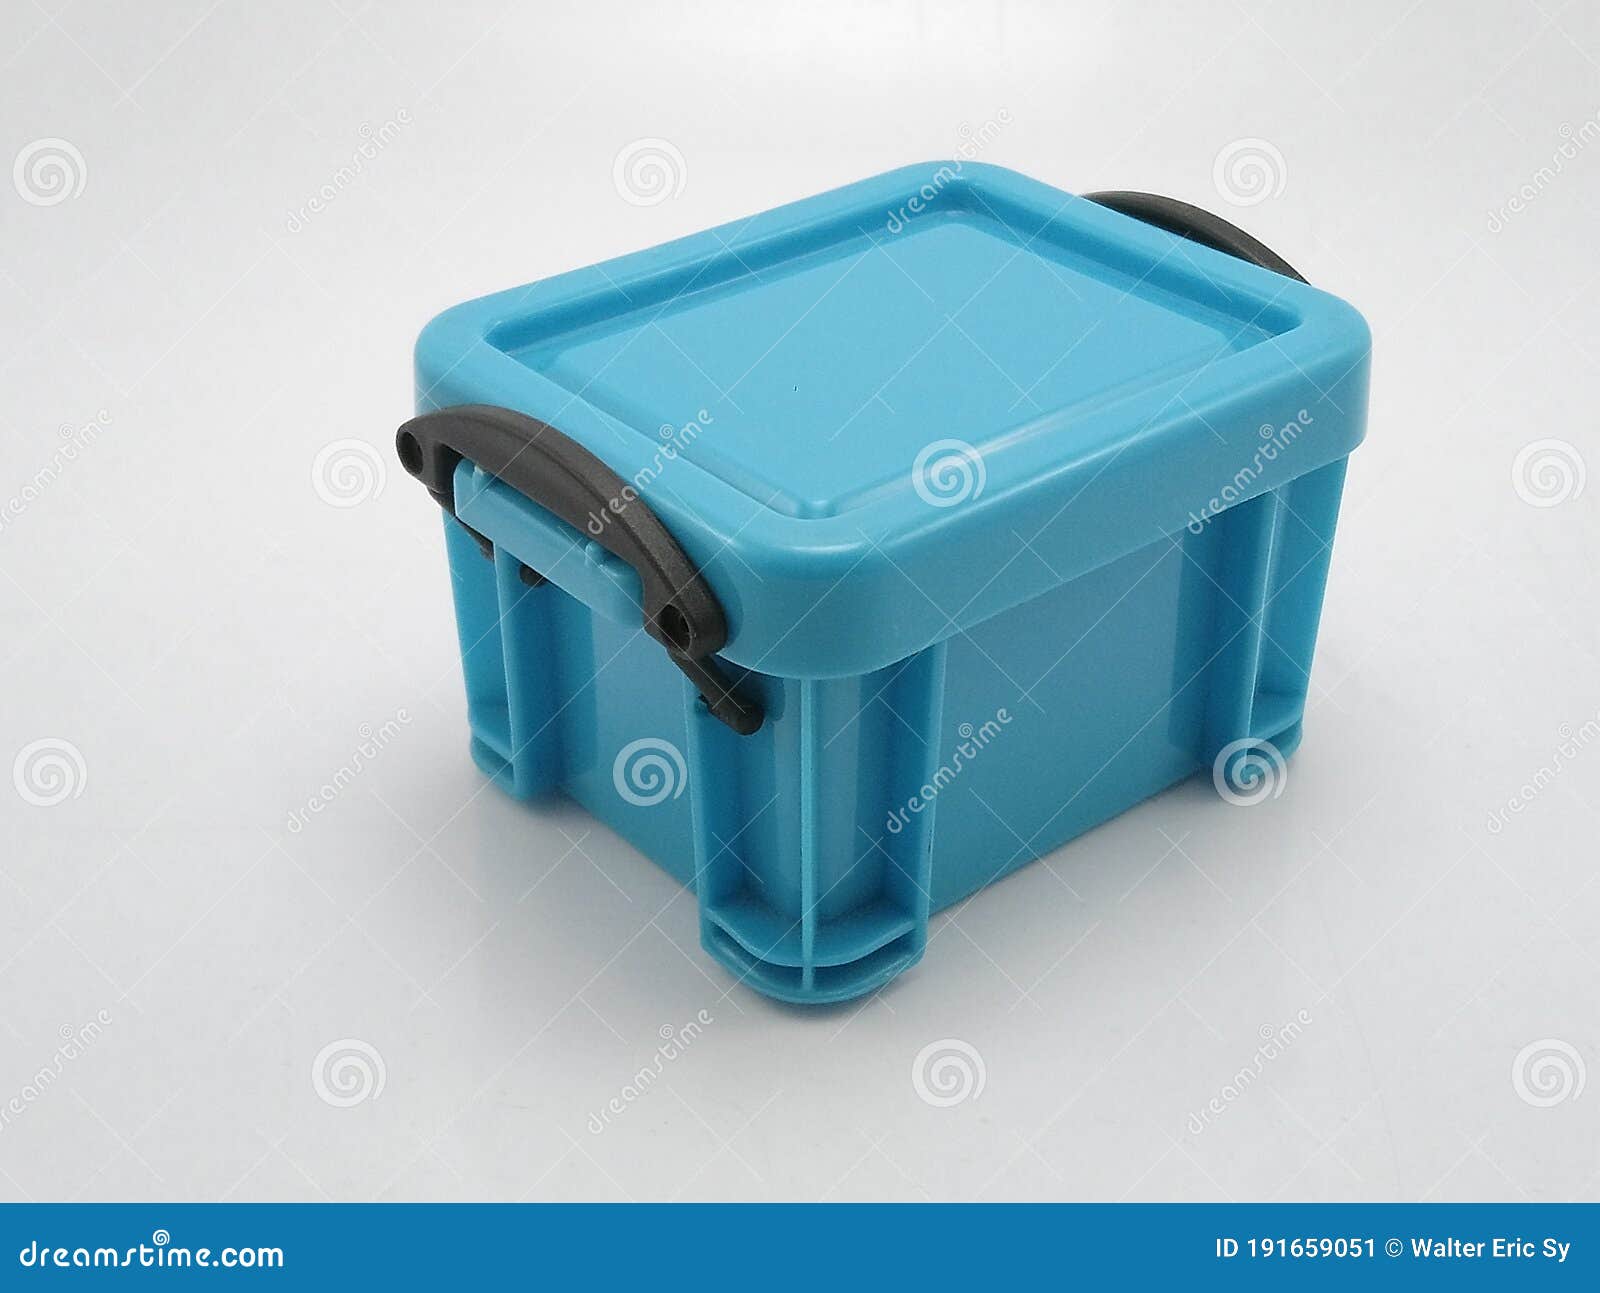 Pequeña Caja De Almacenamiento De Plástico Azul Con Tapa En La Parte Superior Y Cerraduras En Los Lados de archivo - Imagen de pila, objeto: